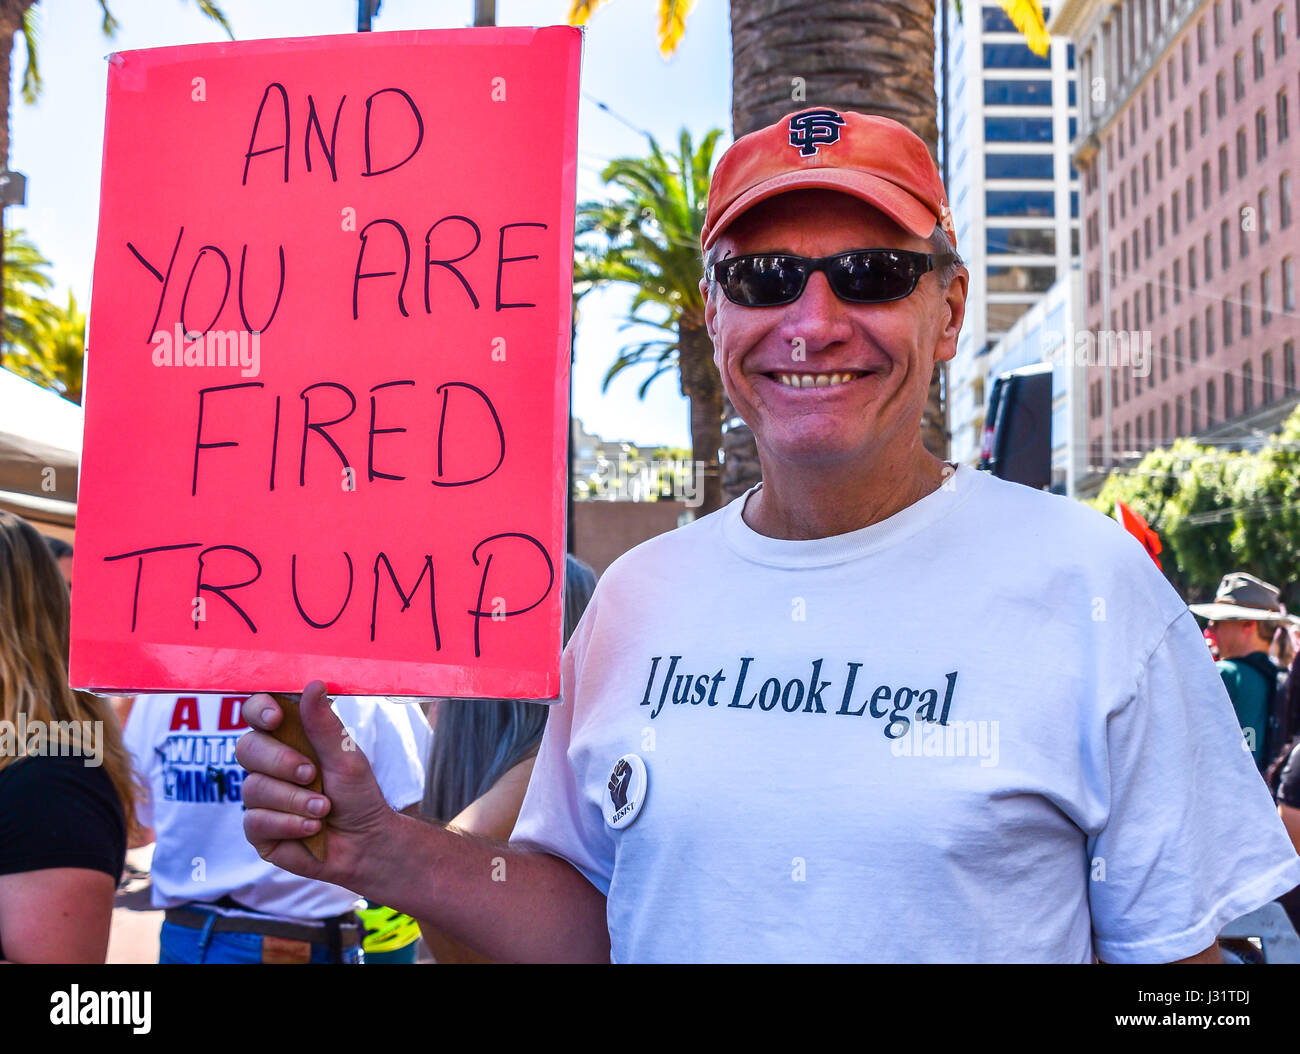 San Francisco, Kalifornien, USA. 1. Mai 2017. Tom Yankowski, ein Demonstrant am 1. Mai "Tag ohne Einwanderer" Rallye und März in San Francisco, trägt ein T-shirt zu Hause, schuf er das liest, "ich nur schauen Legal," als eine scherzhafte Bemerkung auf, was viele fühlen sind Donald Trump Anti-Einwanderungspolitik. In der anderen Hand hält er ein Protest Schild mit der Aufschrift, "und du bist gefeuert Trumpf." Tausende gingen auf die Straße in San Francisco für die May Day / International Workers Tag Protest, bei mehr als 40 Städten in den USA ähnliche Veranstaltungen. Bildnachweis: Shelly Rivoli/Alamy Live-Nachrichten Stockfoto